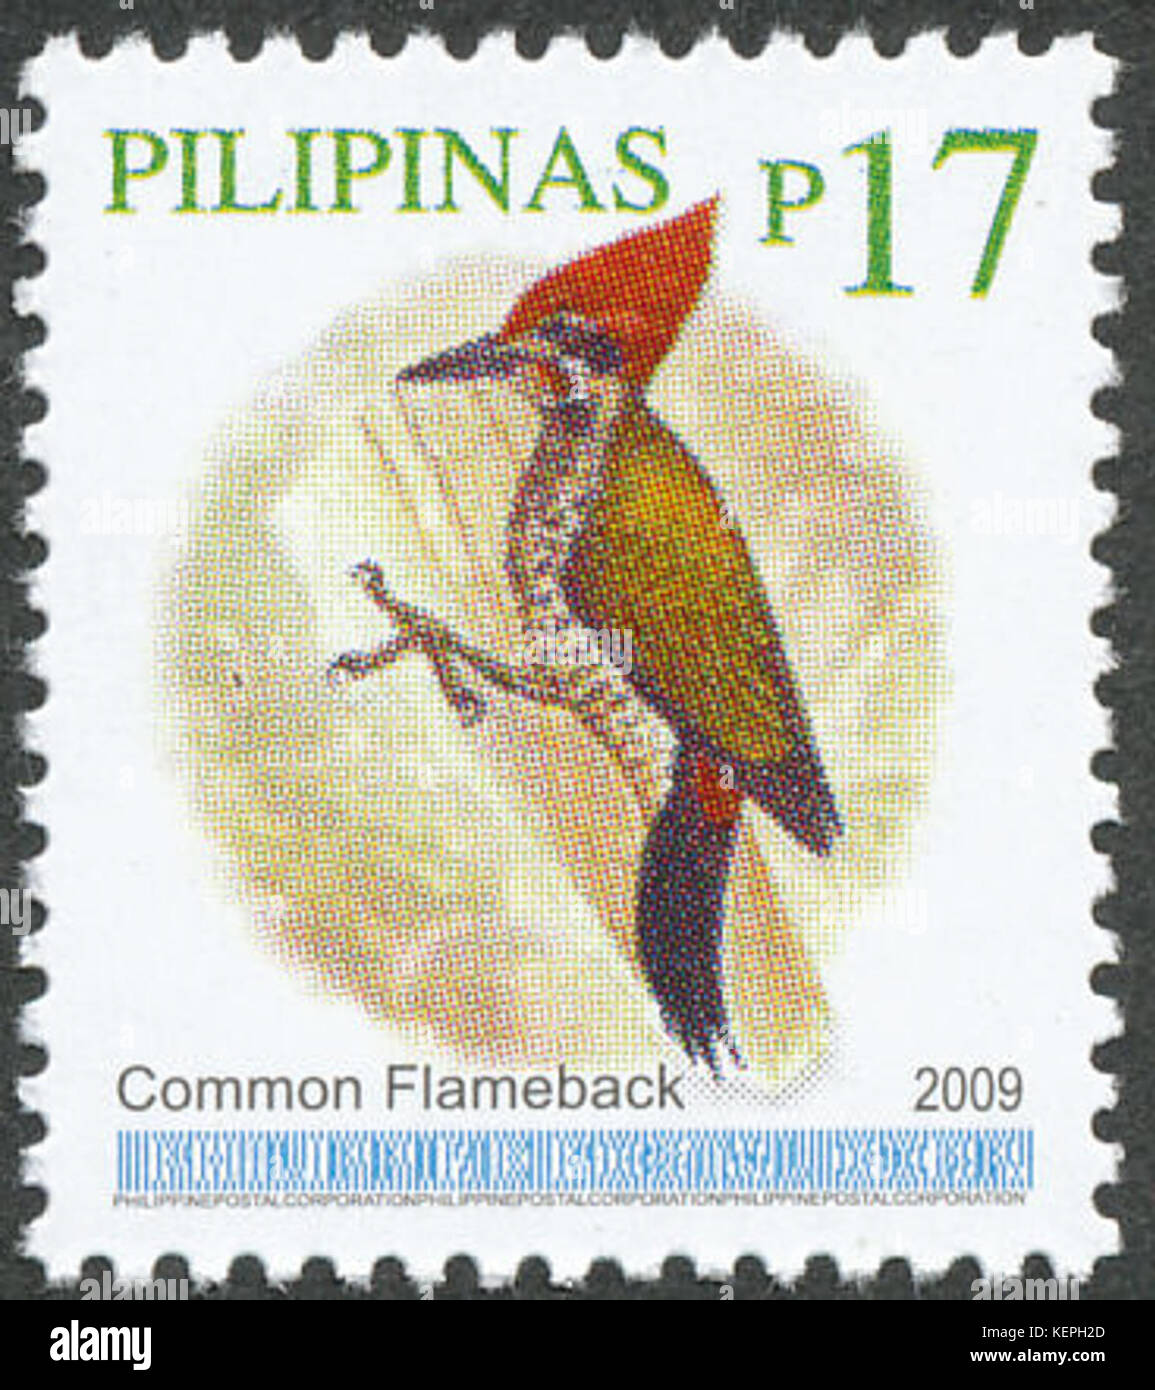 Dinopium javanense 2009 stamp of the Philippines Stock Photo